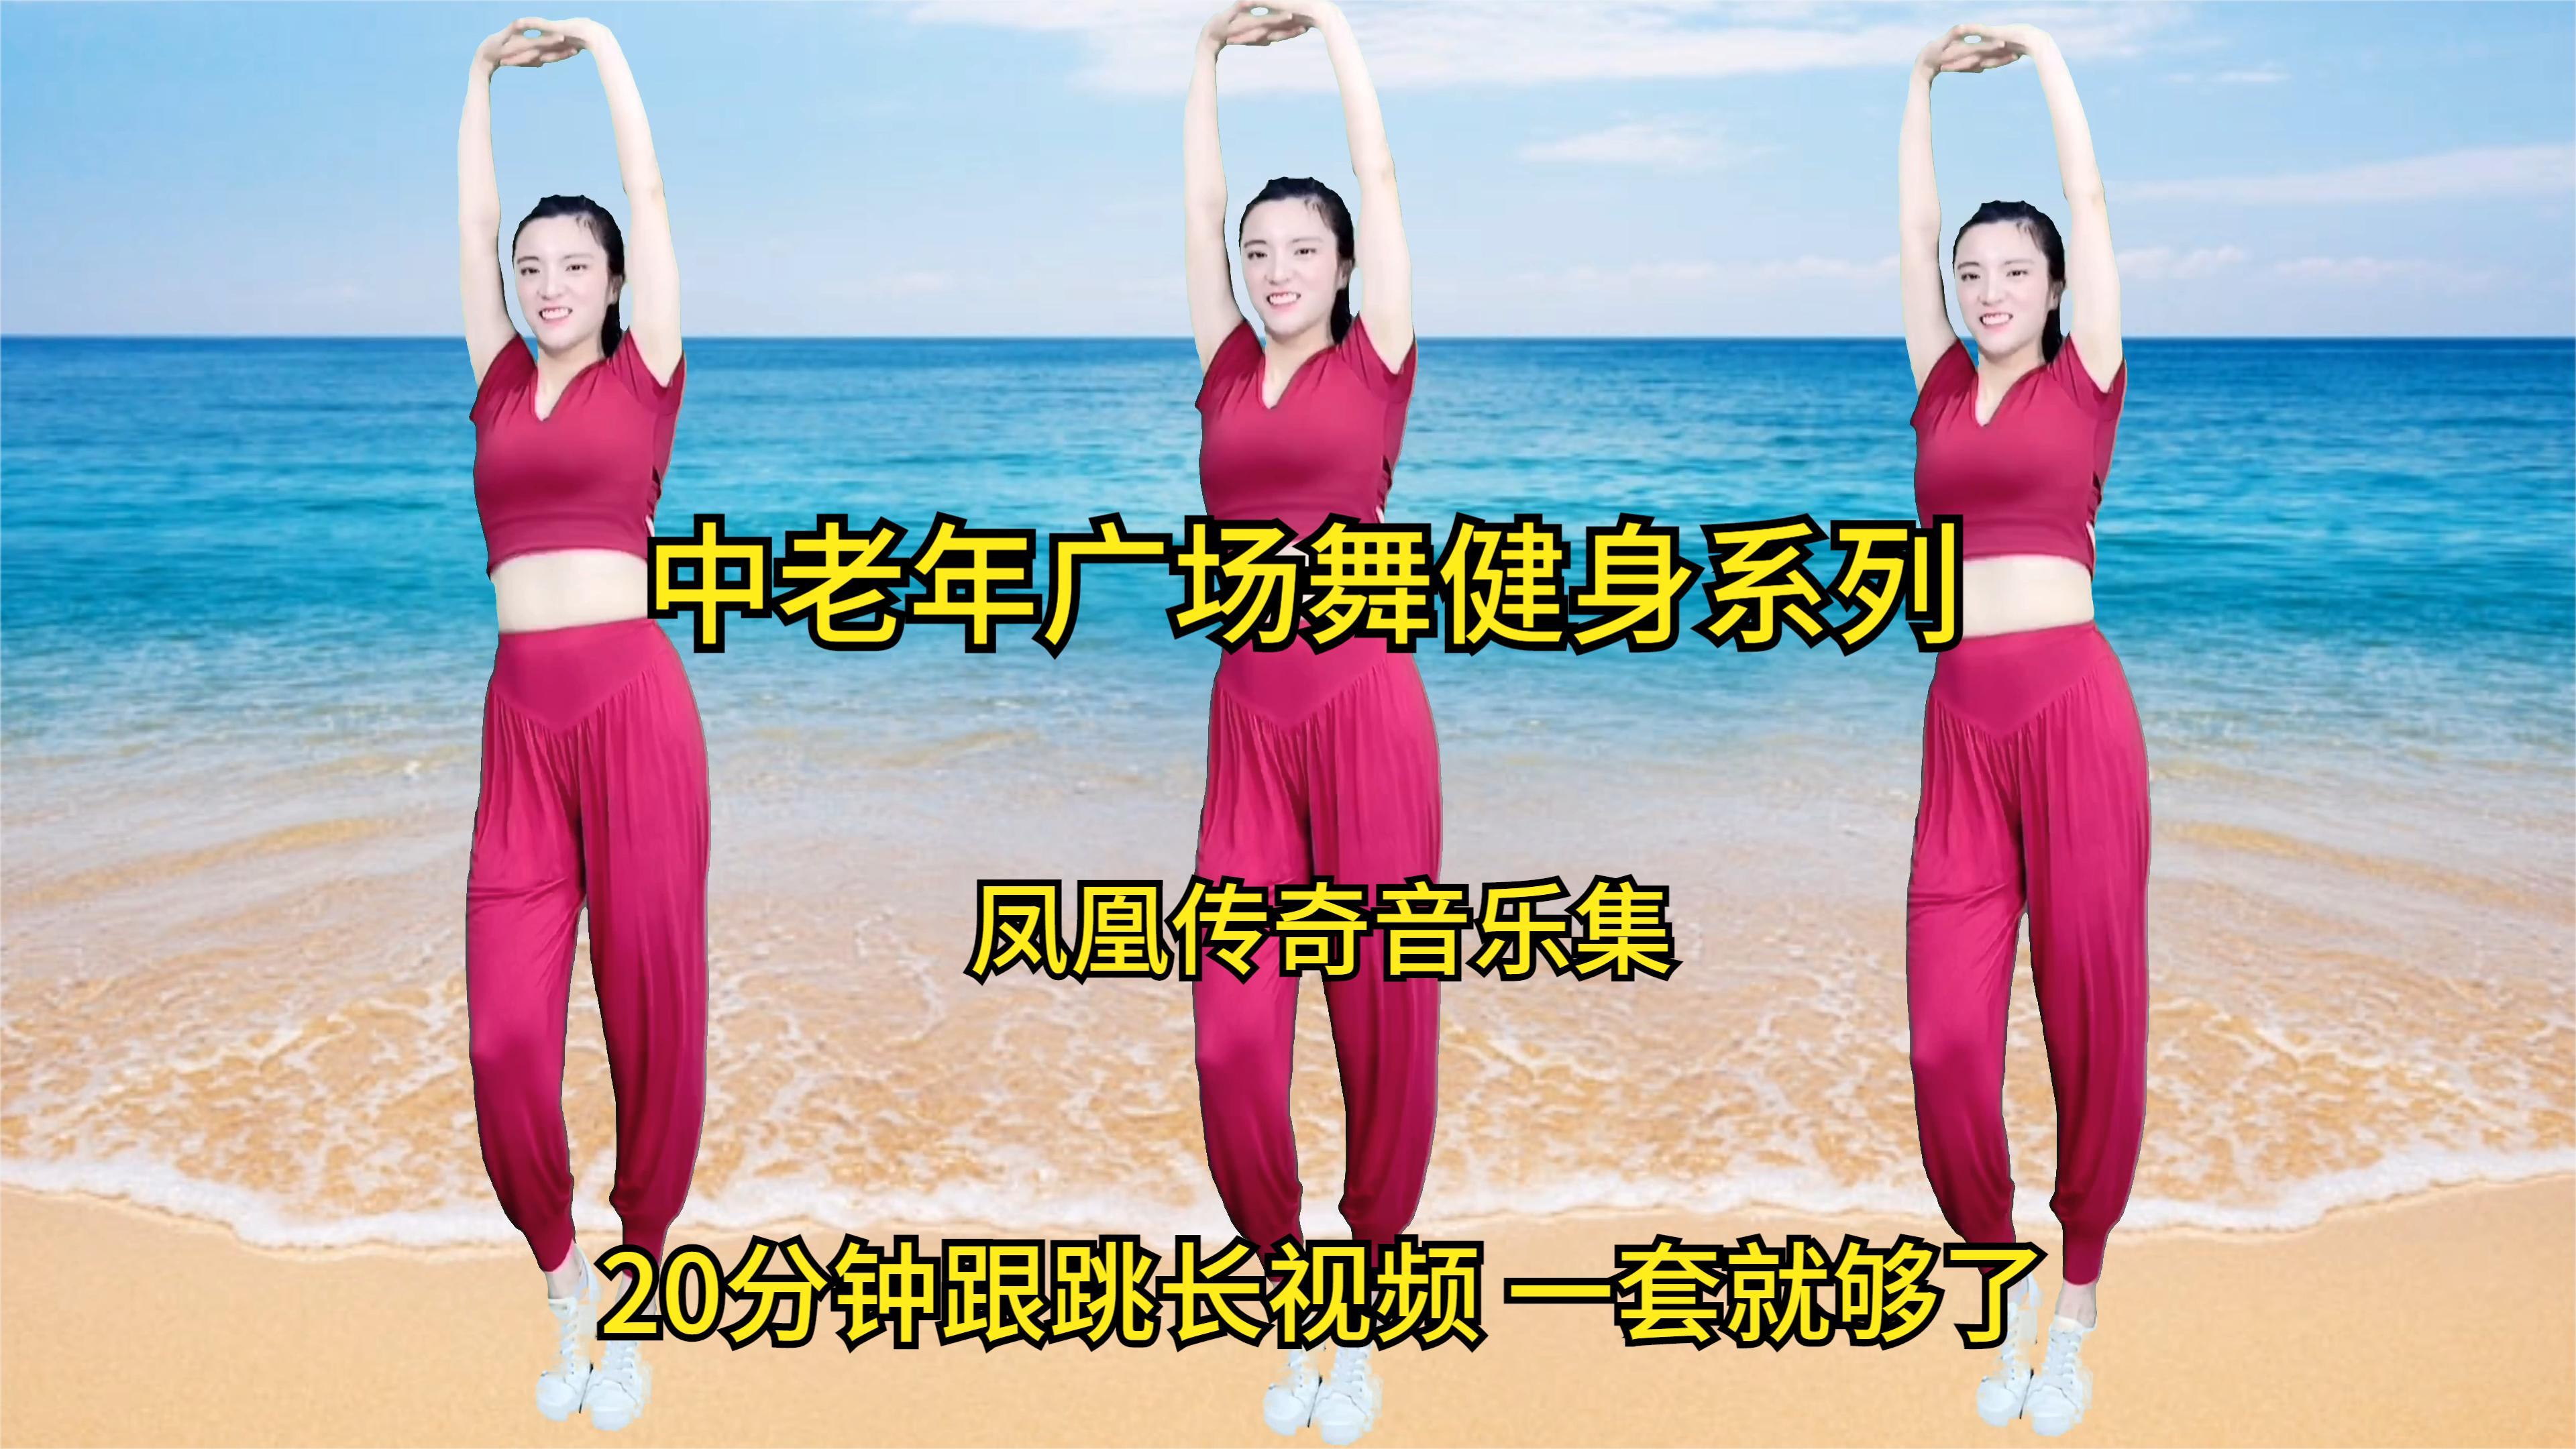 凤凰传奇经典音乐《中老年广场舞》健身系列,20分钟跟跳长视频